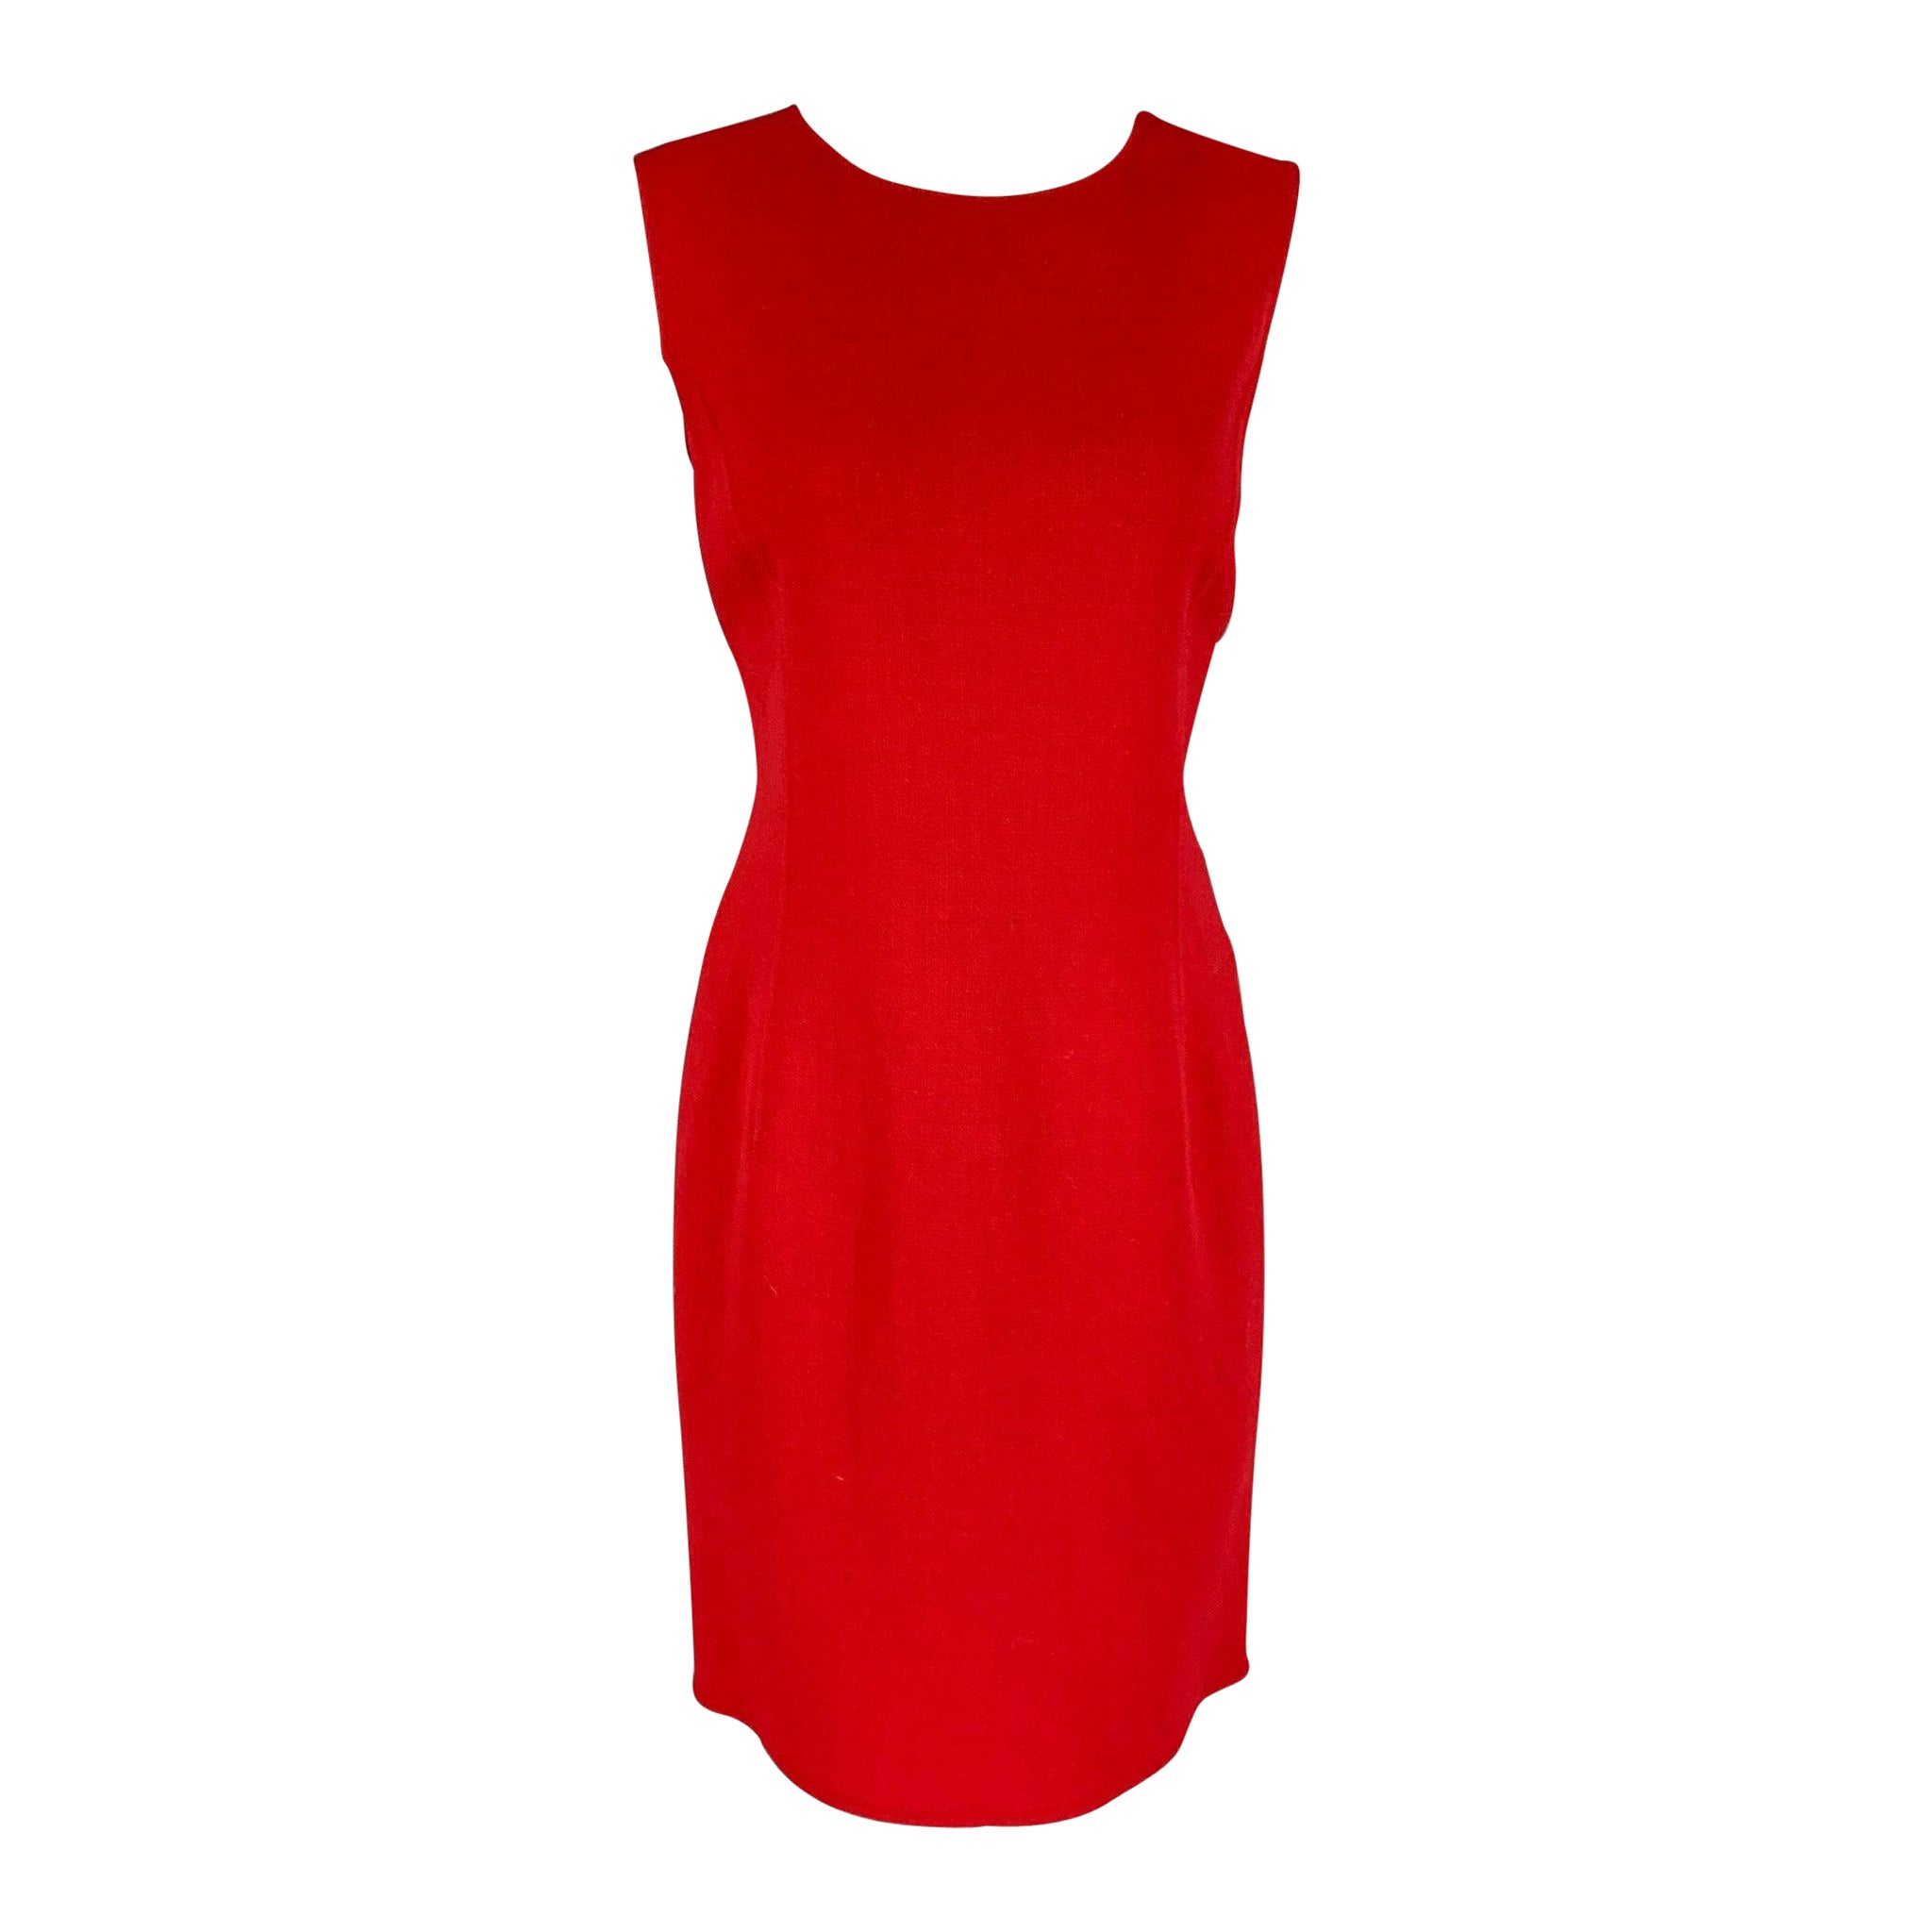 OSCAR DE LA RENTA Size 6 Red Virgin Wool Blend Shift Dress For Sale